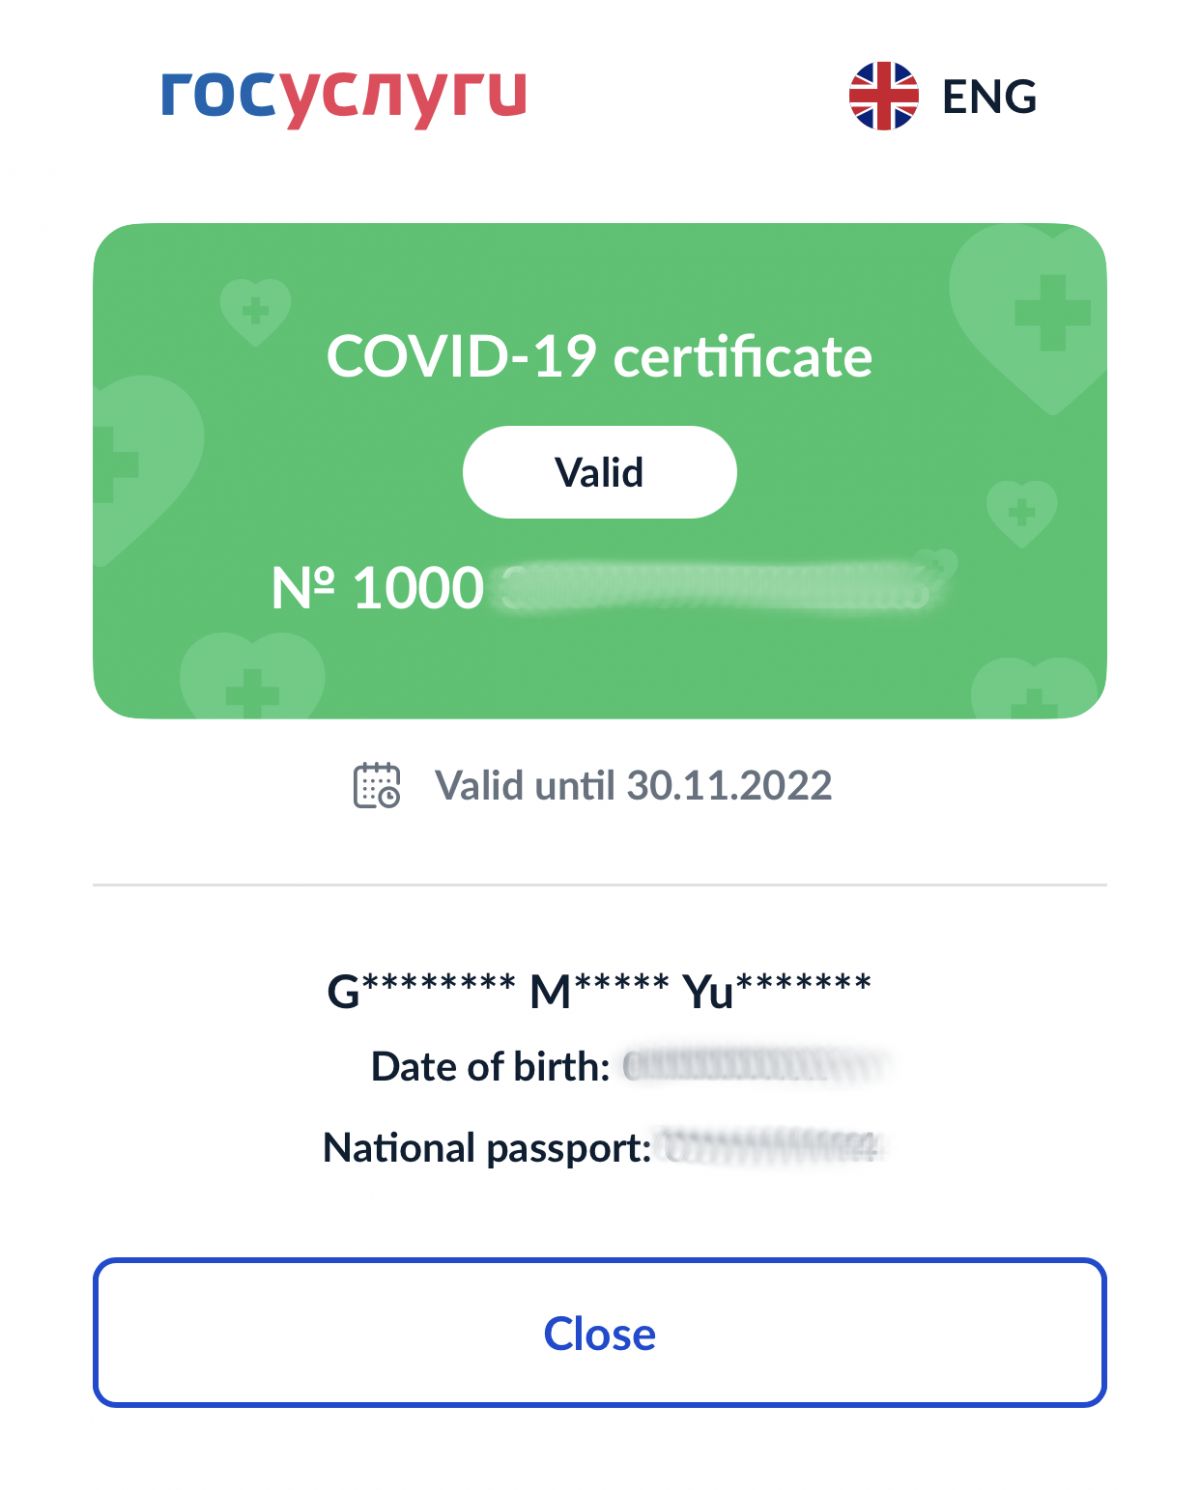 Как я могу использовать номер сертификата для подтверждения действительности прививки от коронавируса?